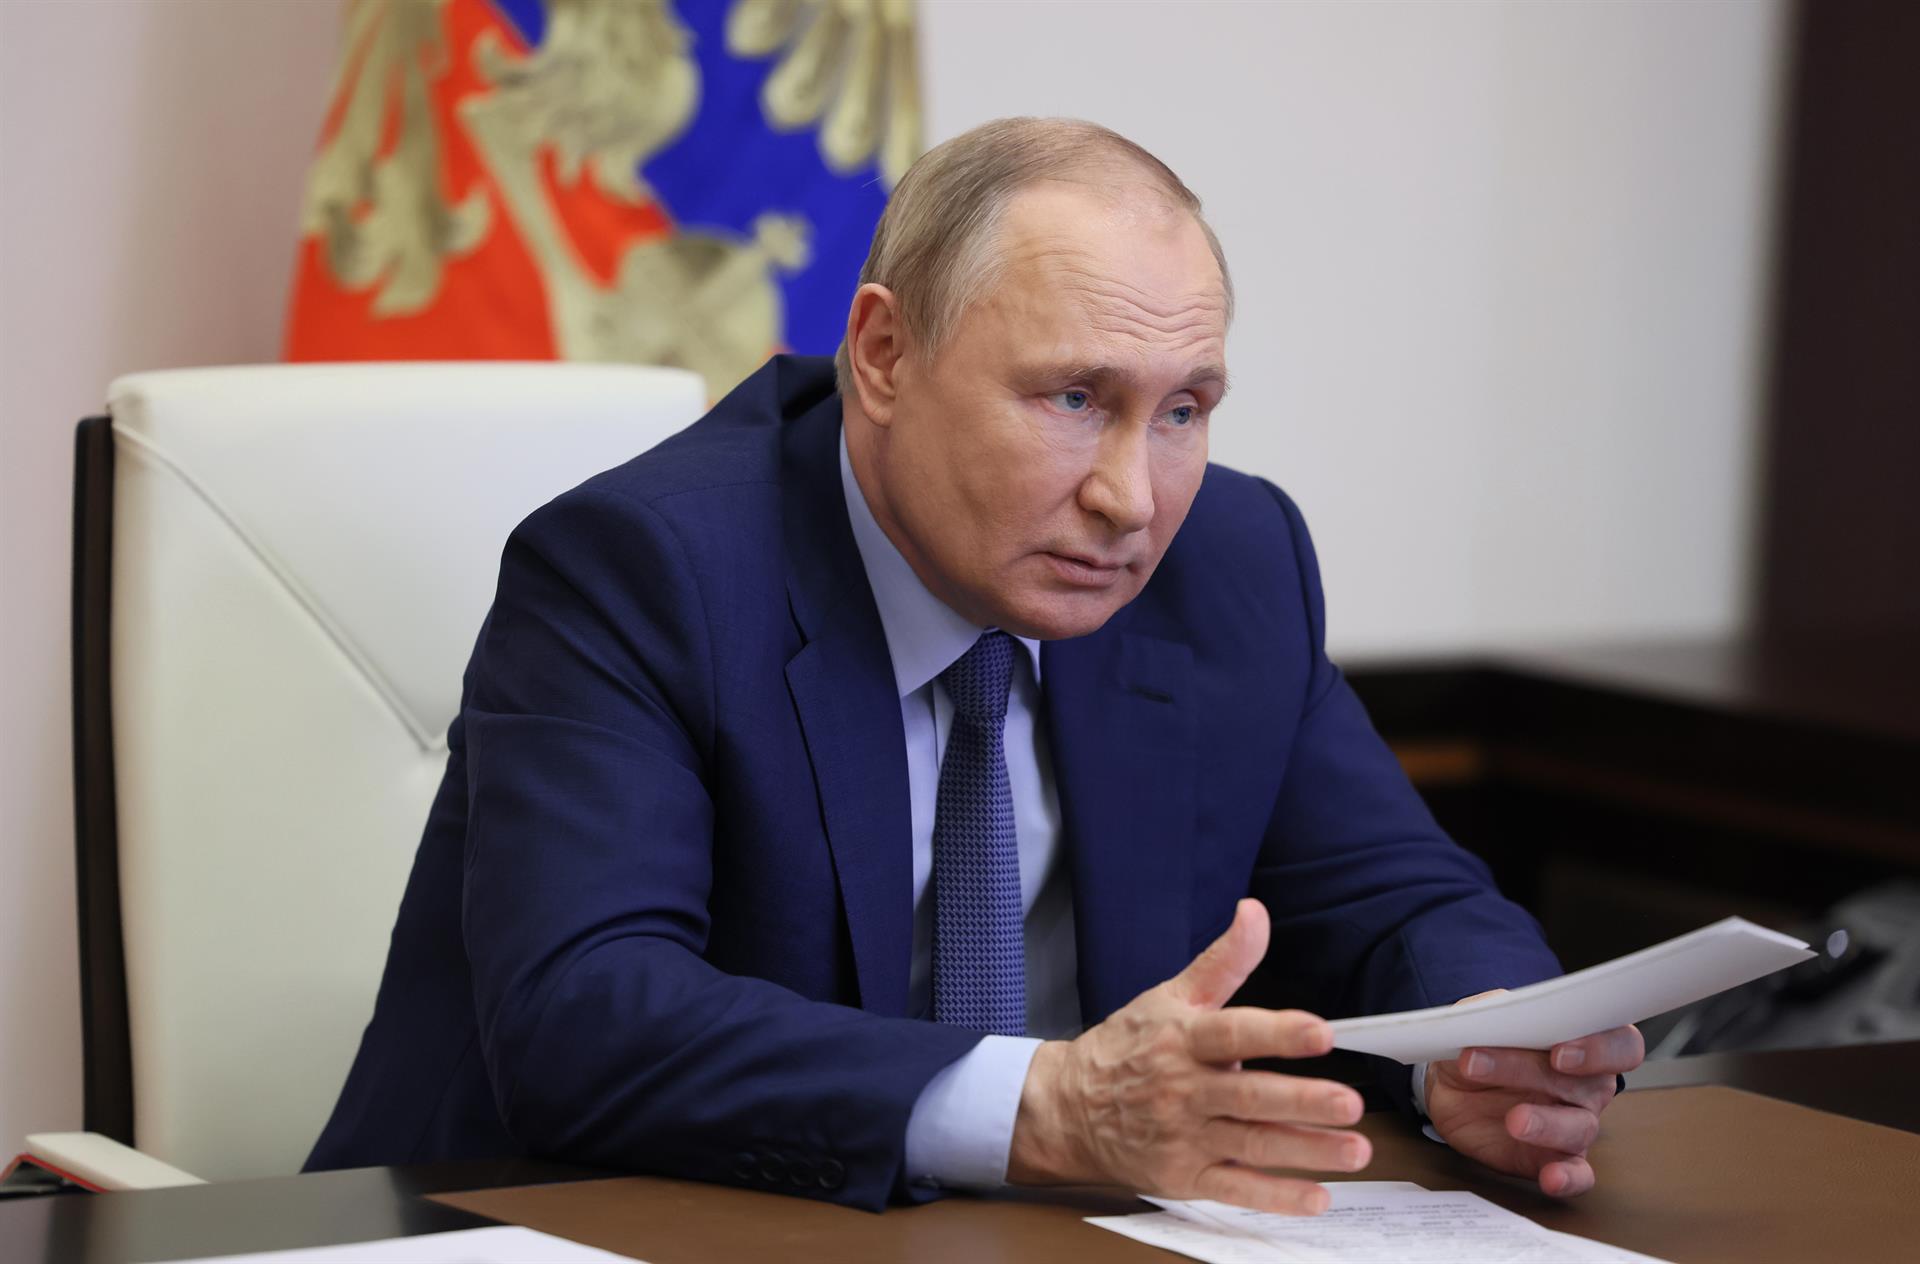 Rusia ha logrado controlar la inflación, según Putin